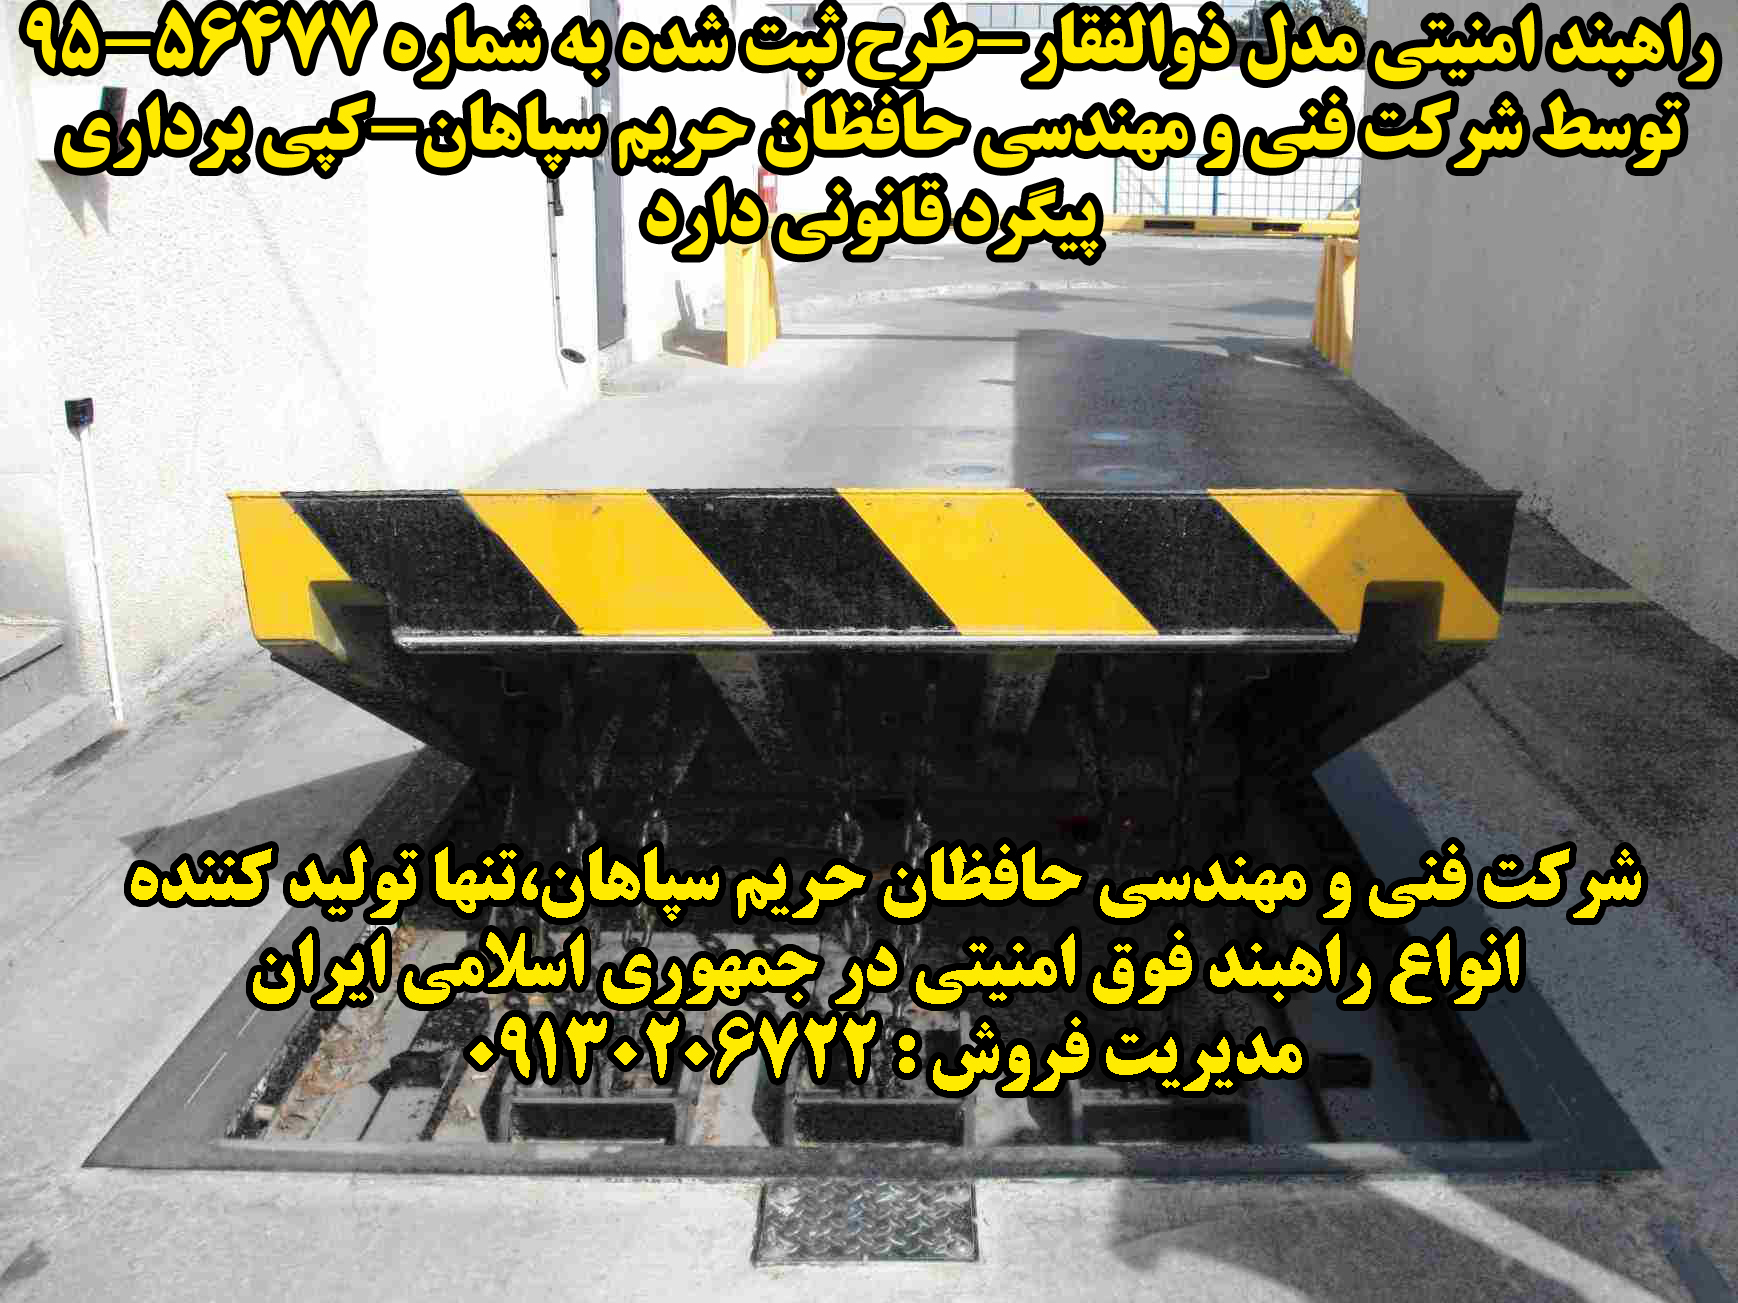 فروش و نصب انواع راهبند امنیتی دفنی در تهران